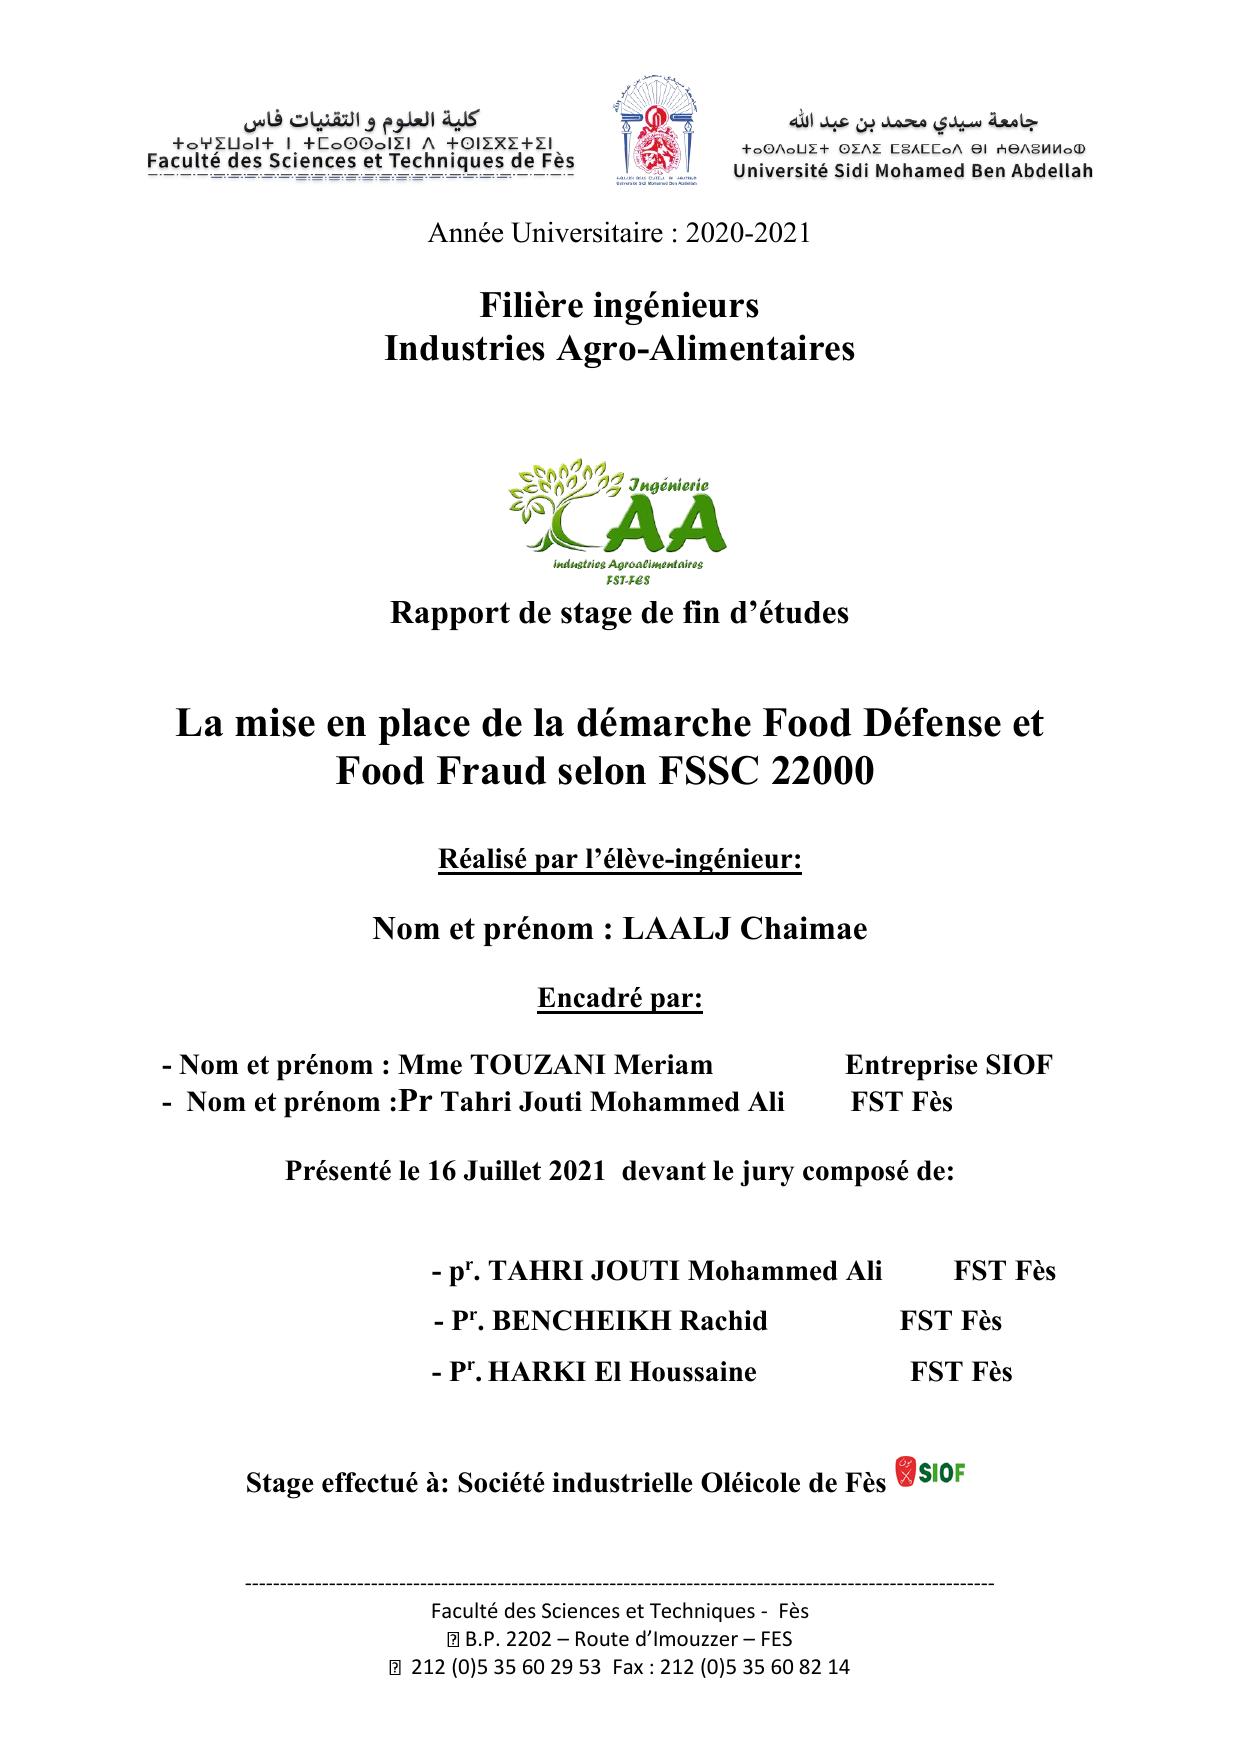 La mise en place de la démarche Food Défense et Food Fraud selon FSSC 22000